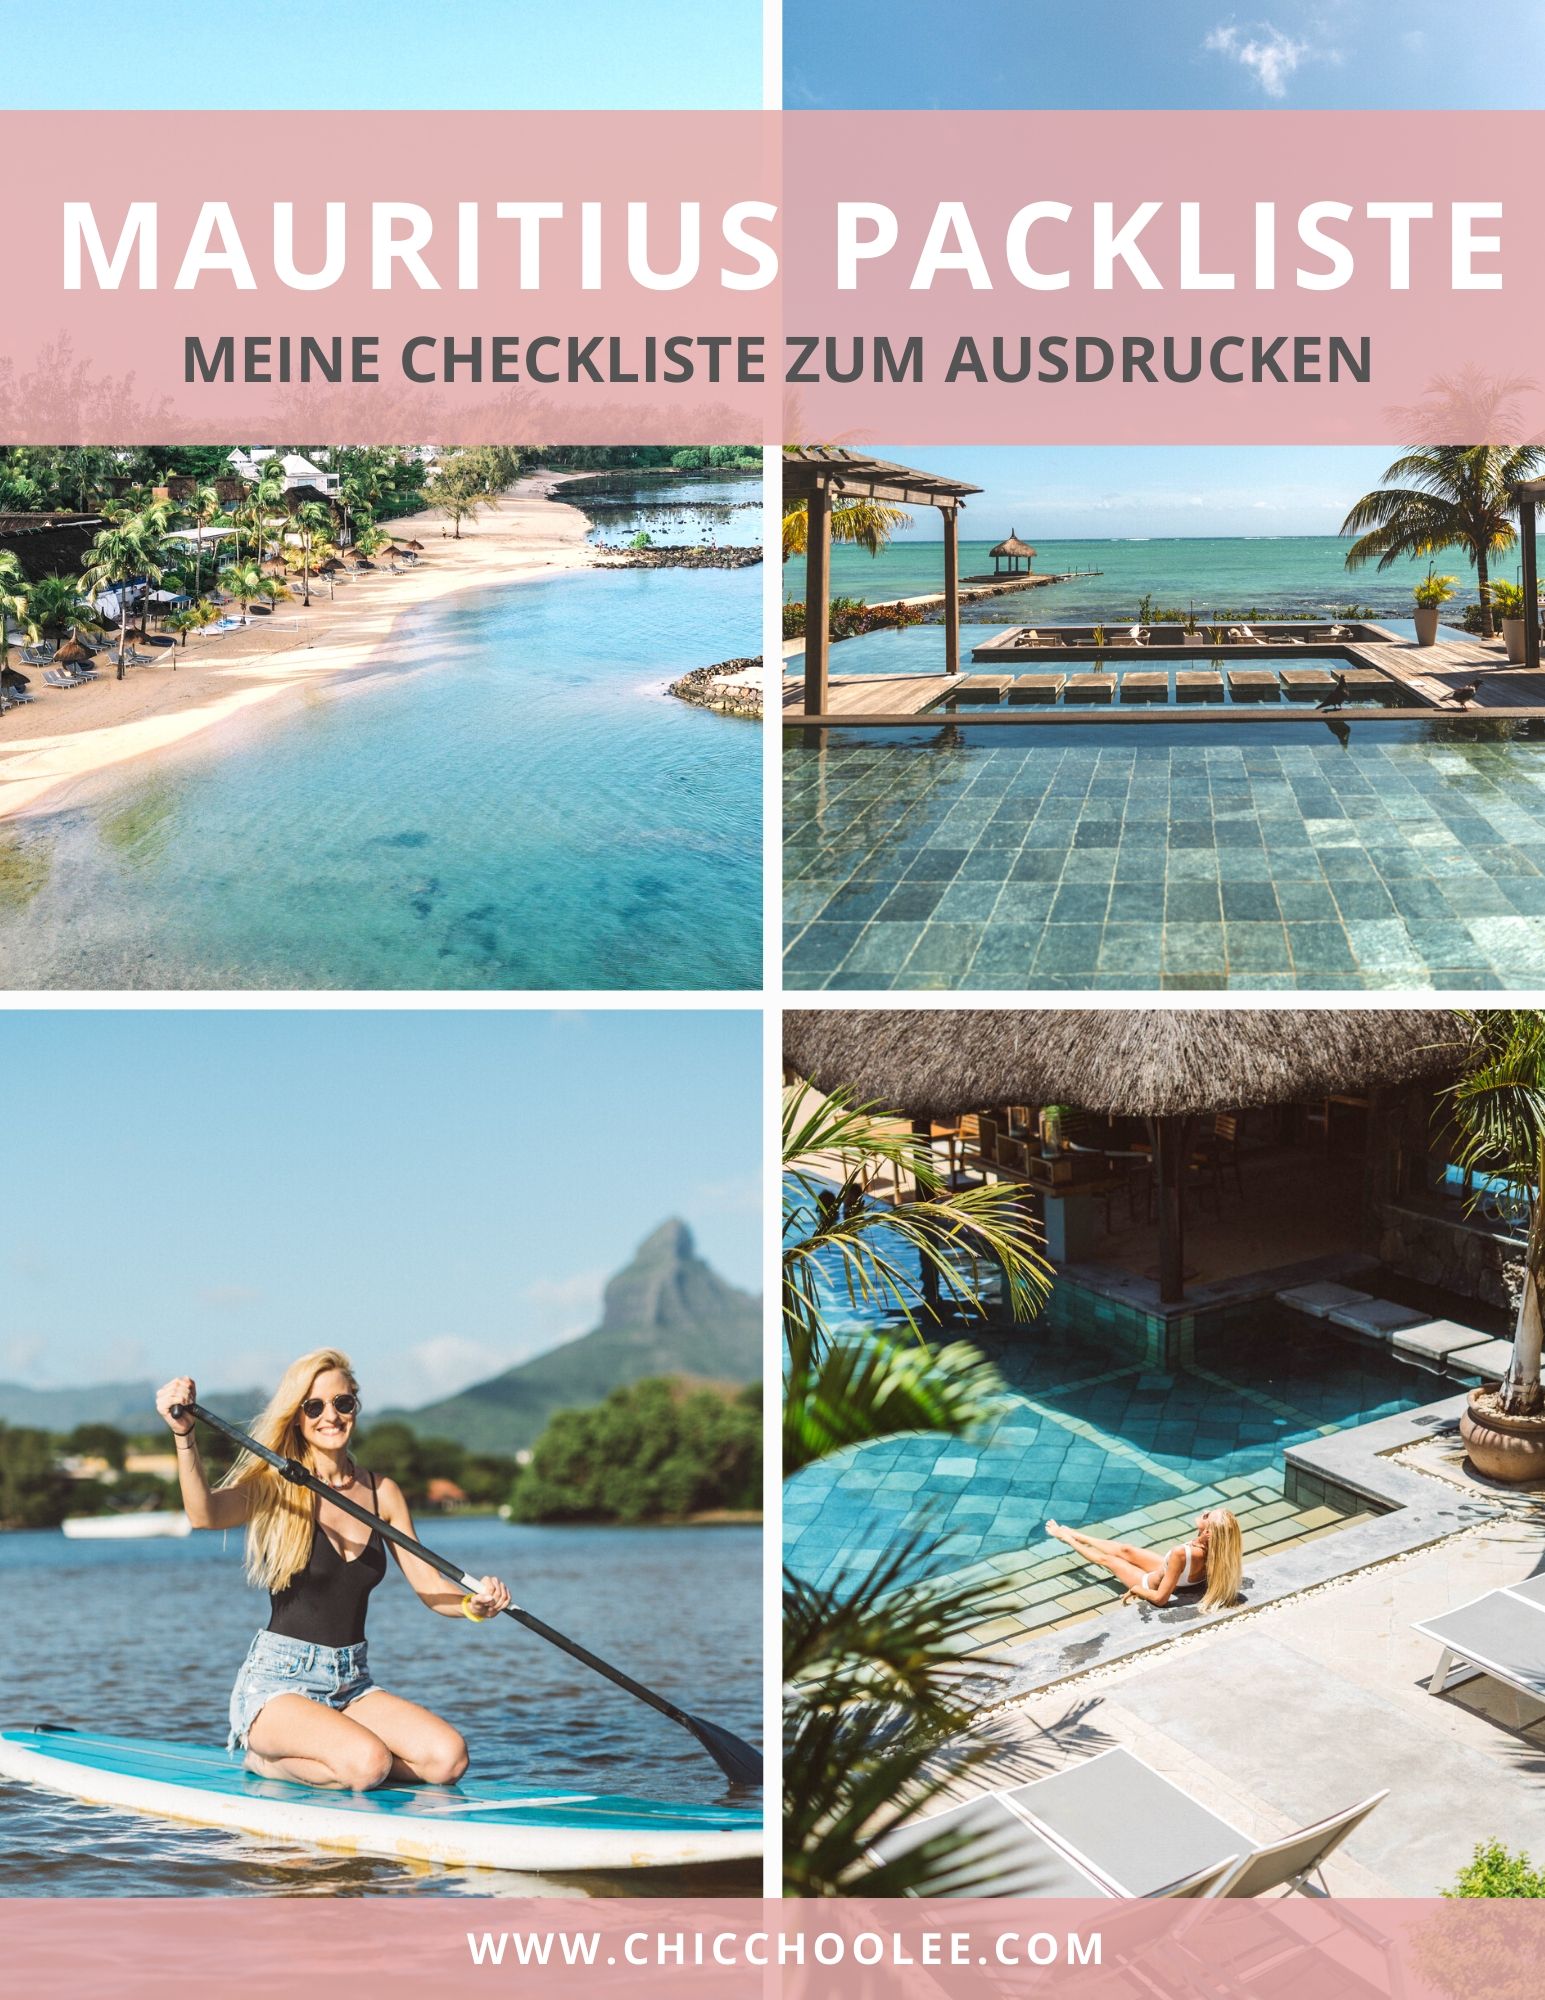 Mauritius Packliste Urlaub 